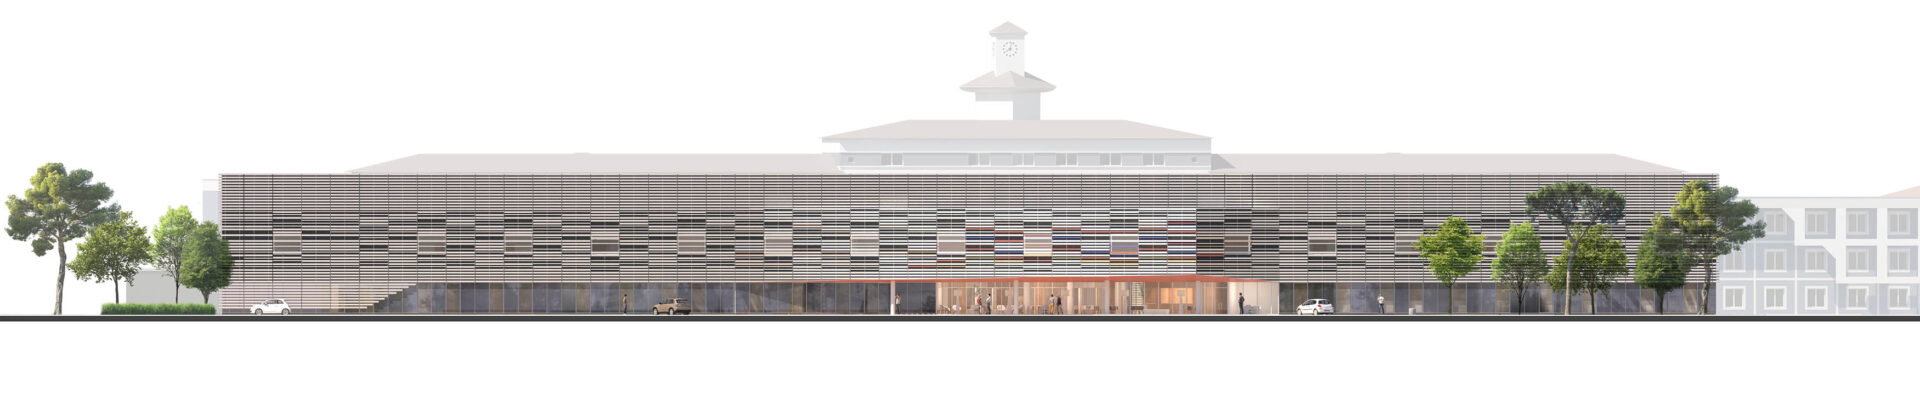 Concours pour le nouveau centre hospitalier dd Mont de Marsan, AIA Life Designer, perspective aérienne , piétonne et intérieure, maquette globale avec film d'animation 3D, rendu du concours avec façades 3D et plan masse